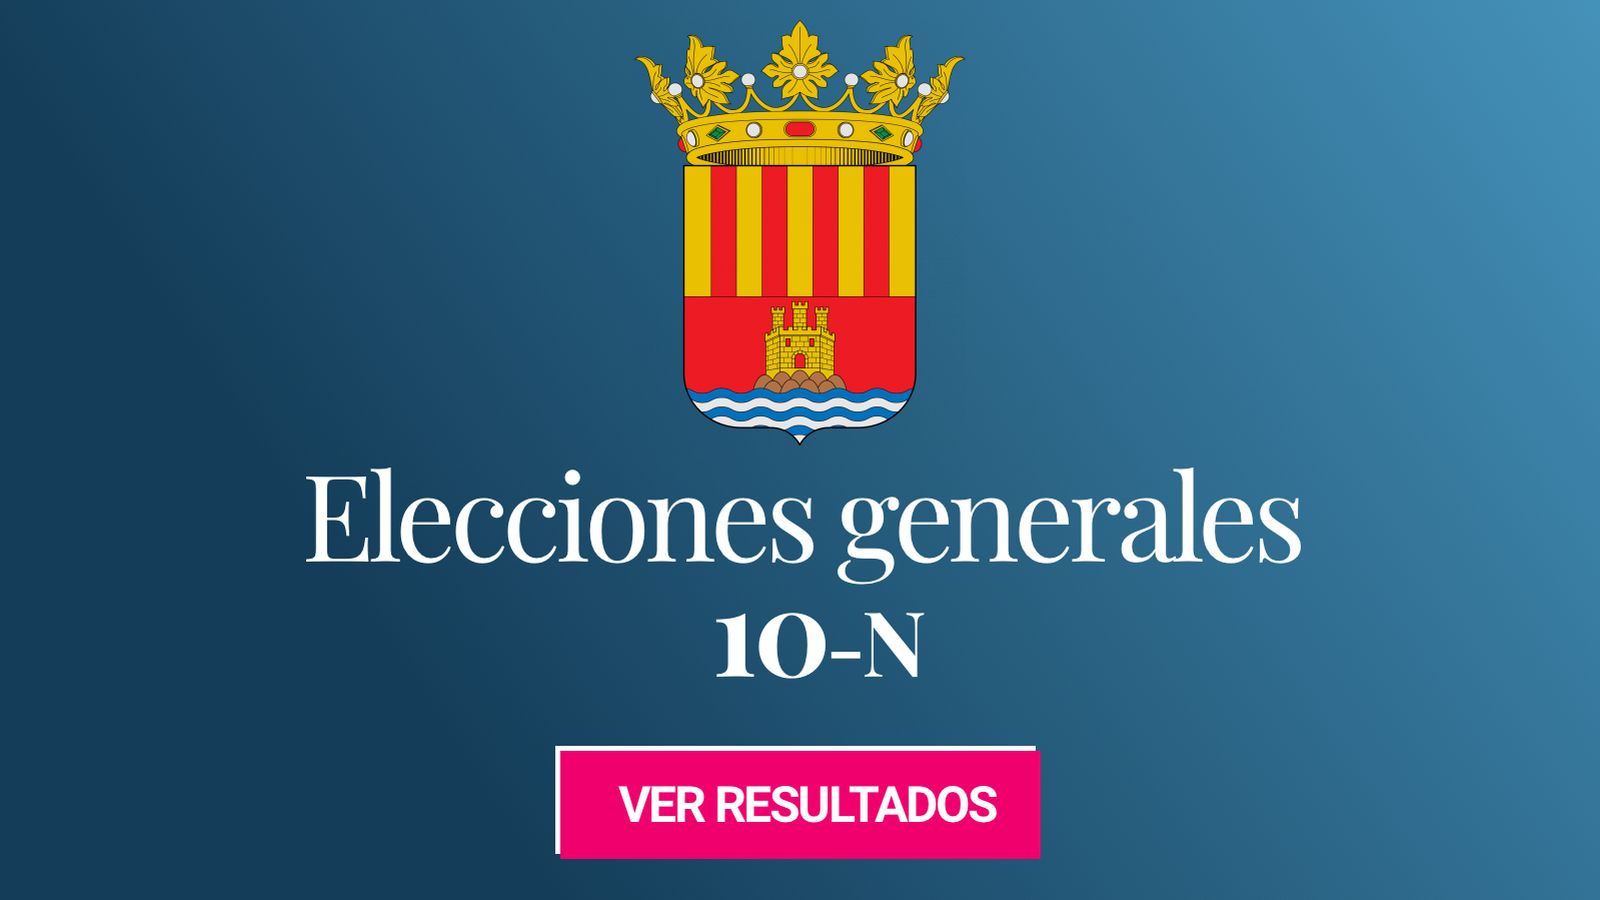 Foto: Elecciones generales 2019 en la provincia de Alicante. (C.C./HansenBCN)